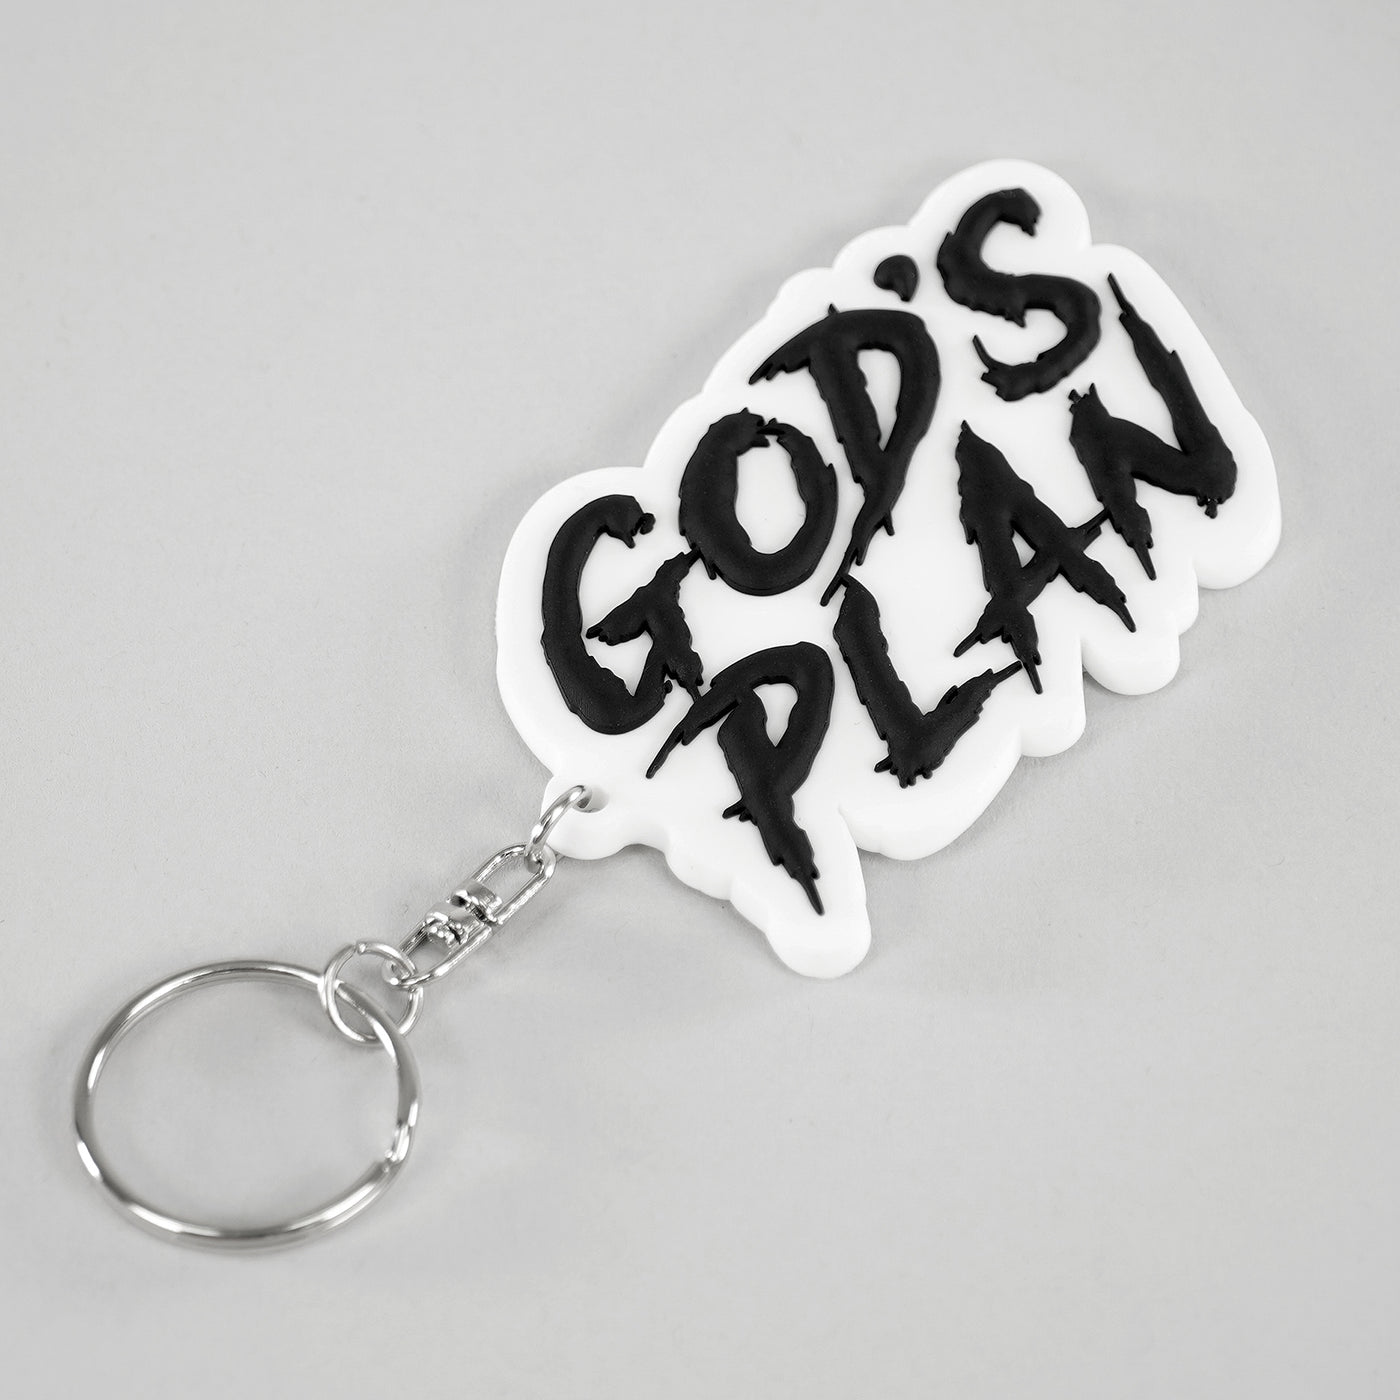 God's Plan Keychain